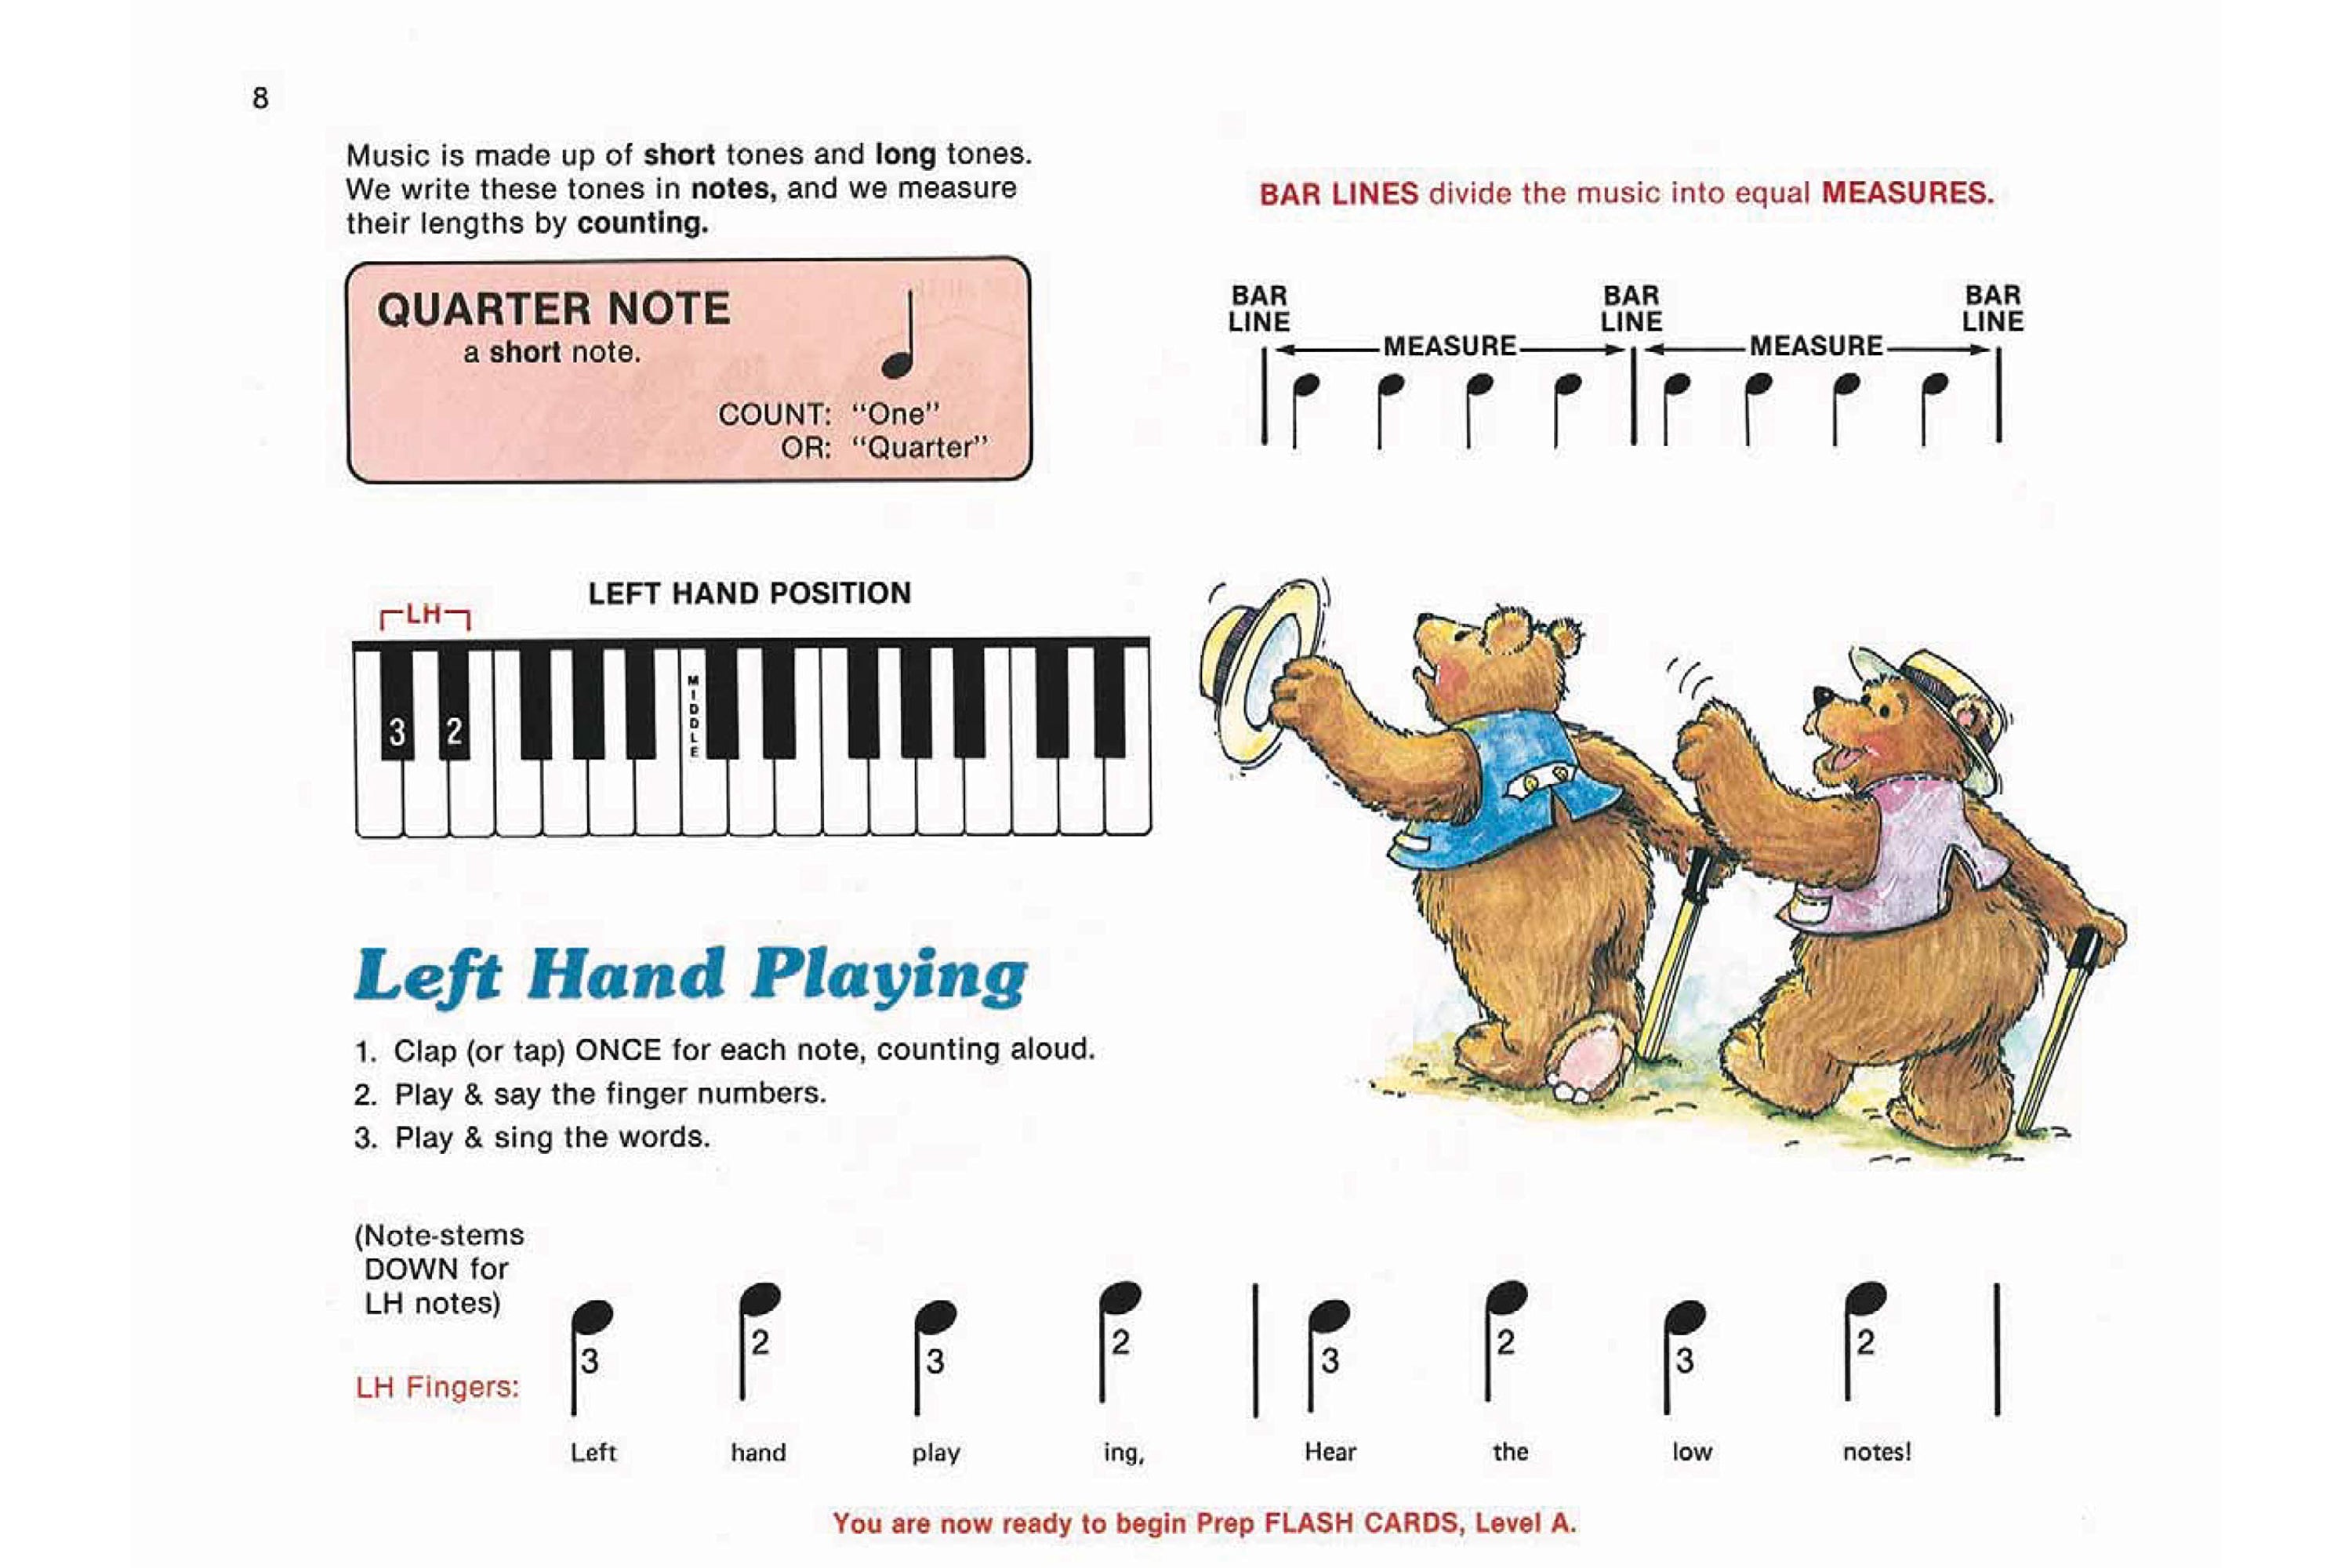 Alfred's Basic Piano Prep Course - Lesson Book A